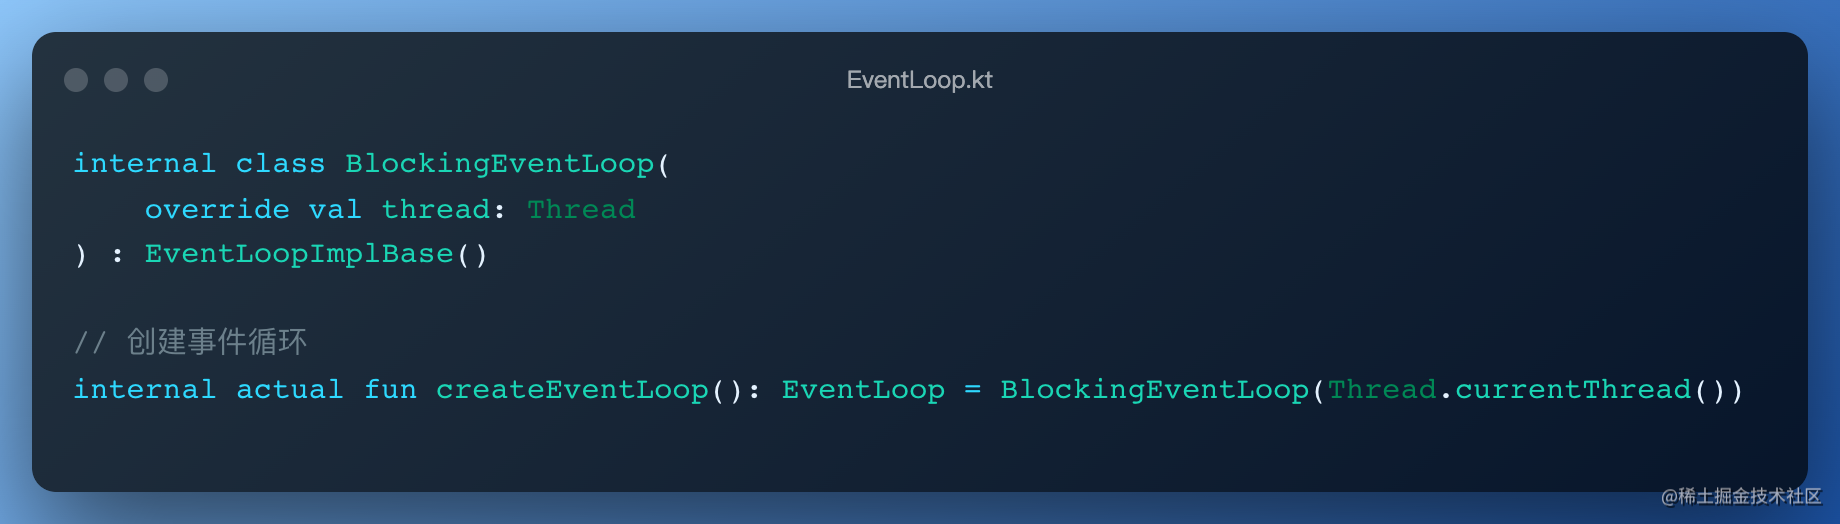 EventLoop.kt (1)_qcQ3uKMo2s.png